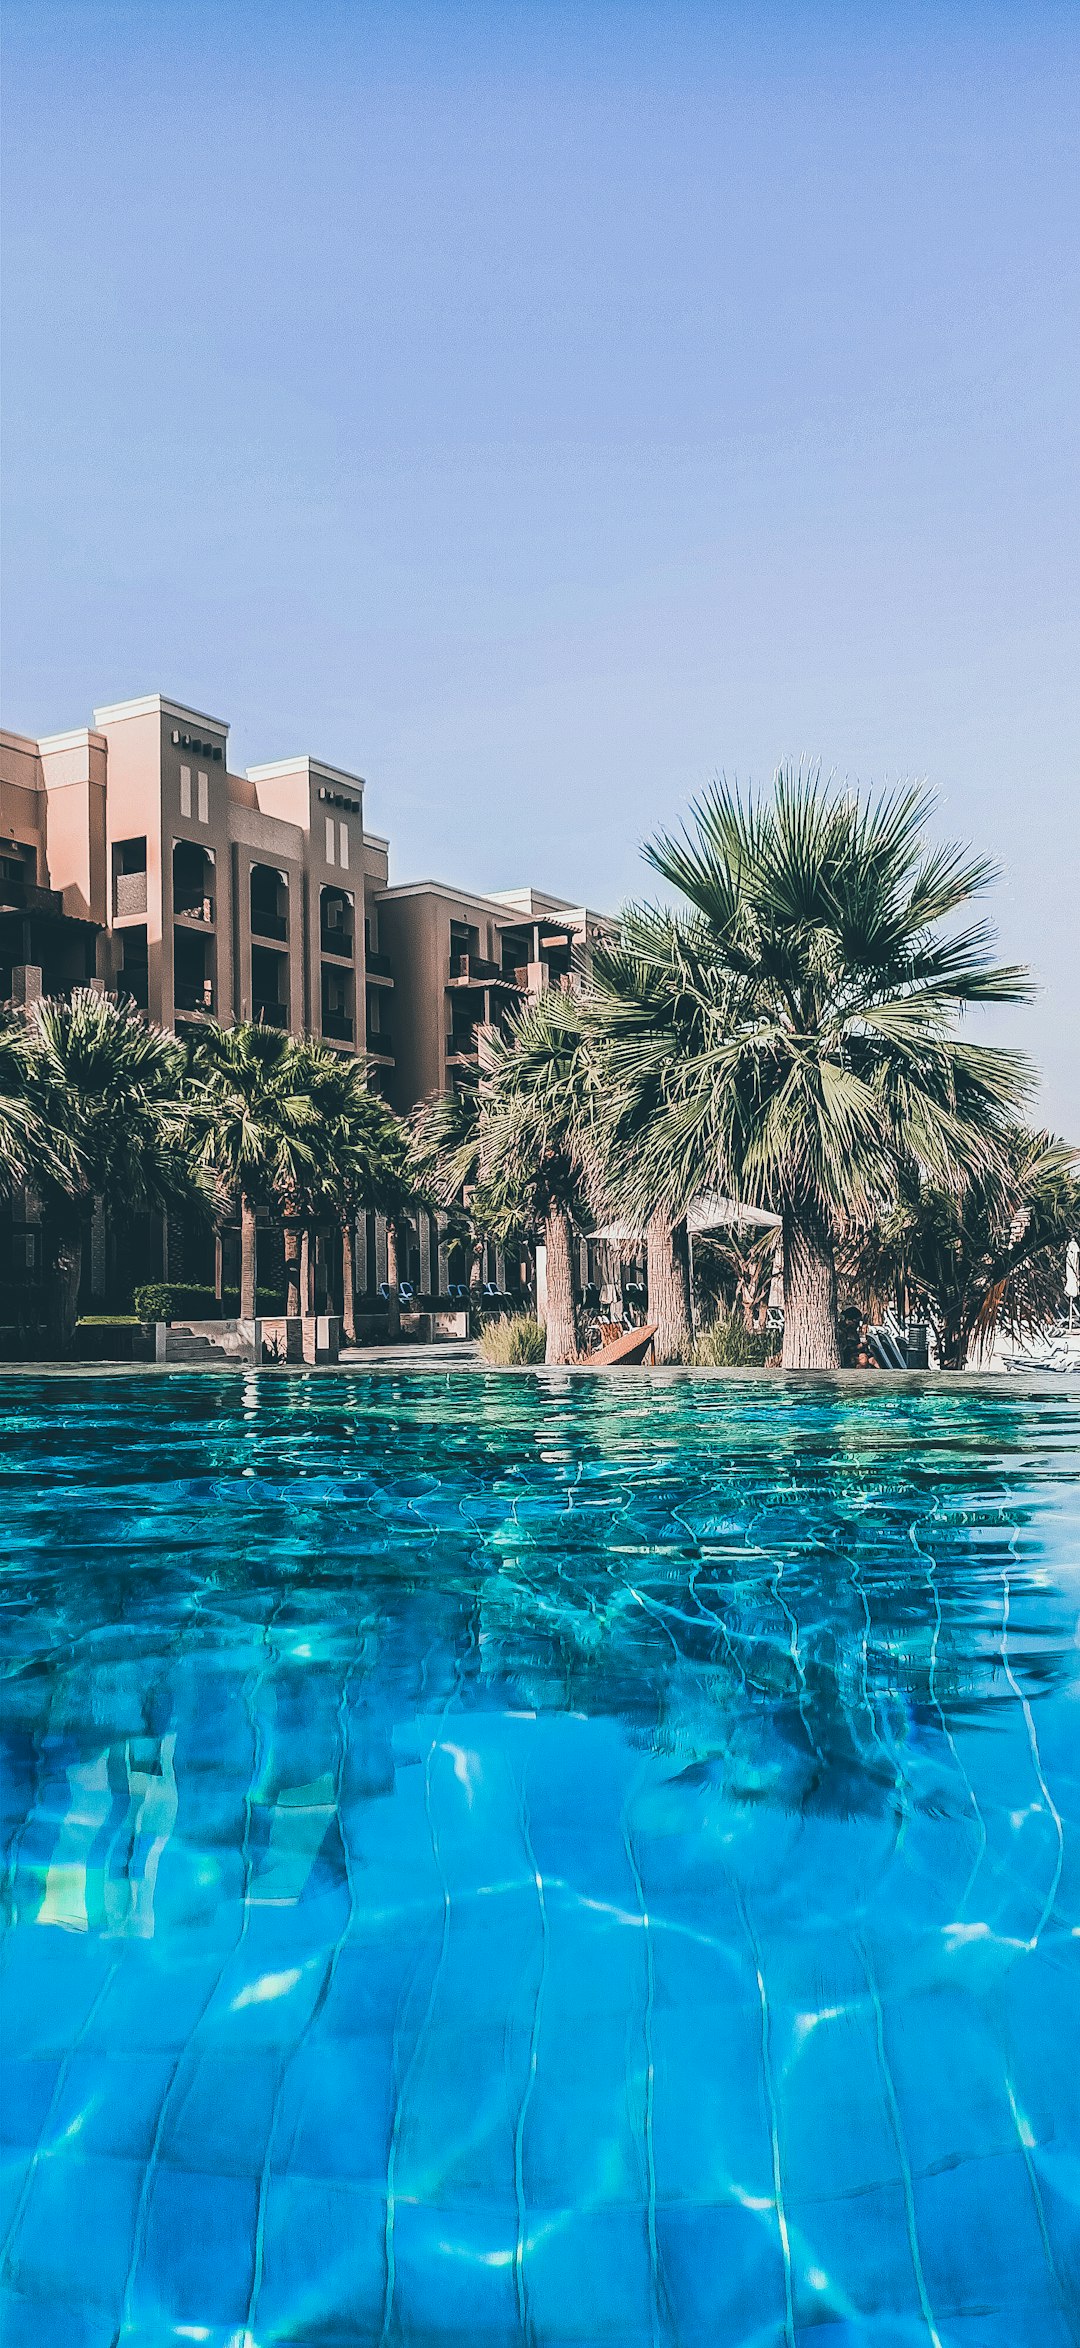 Resort photo spot Ras Al-Khaimah - Ras al Khaimah - United Arab Emirates Ajman